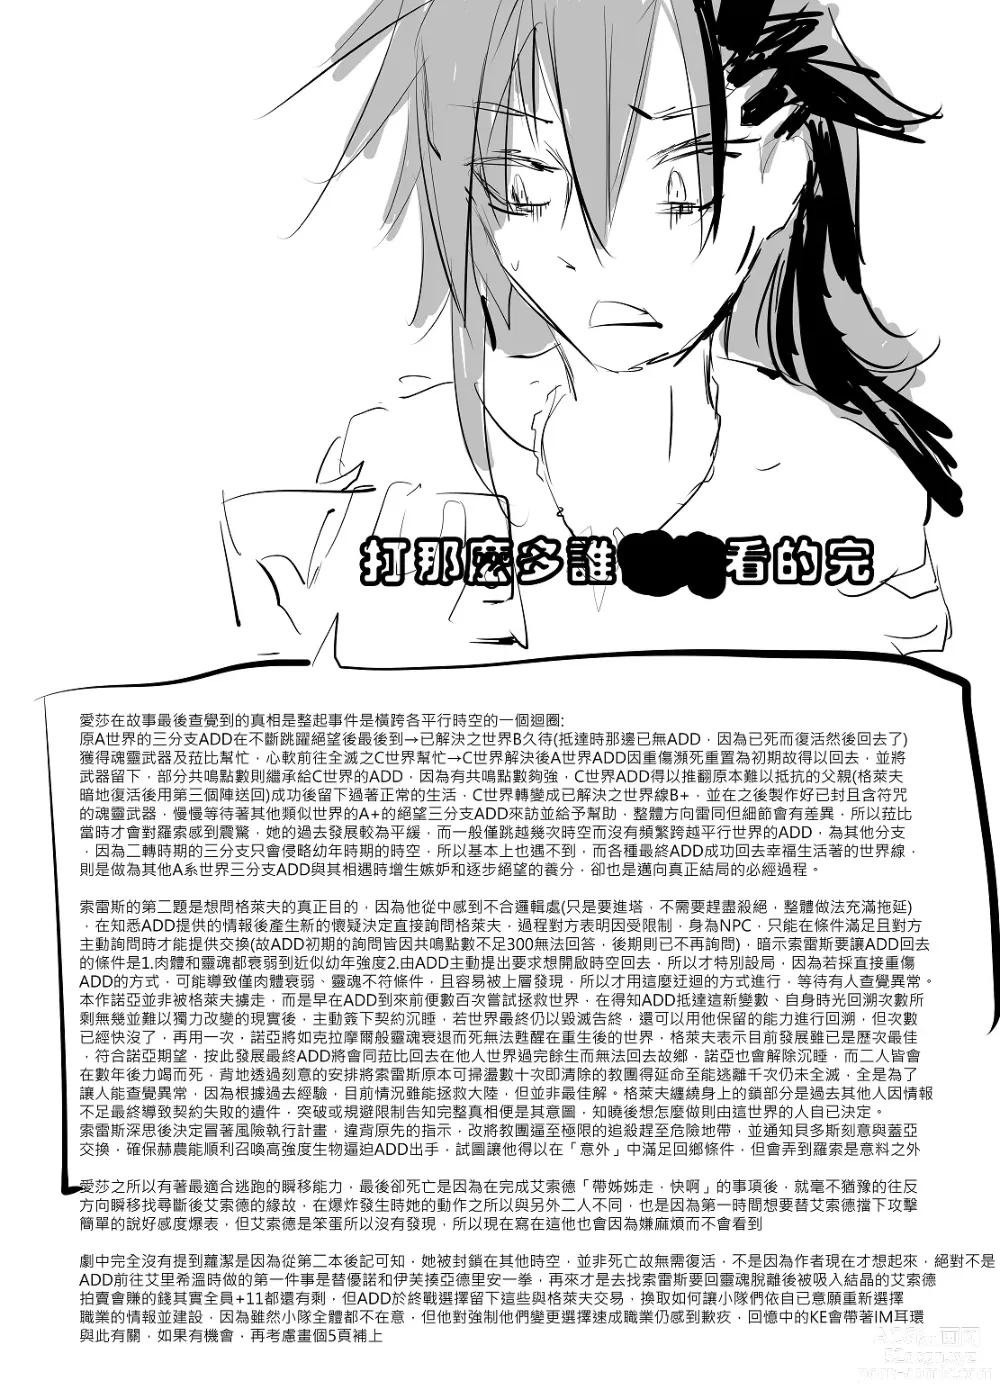 Page 98 of doujinshi ELSWORD:TYPE-V (decensored)